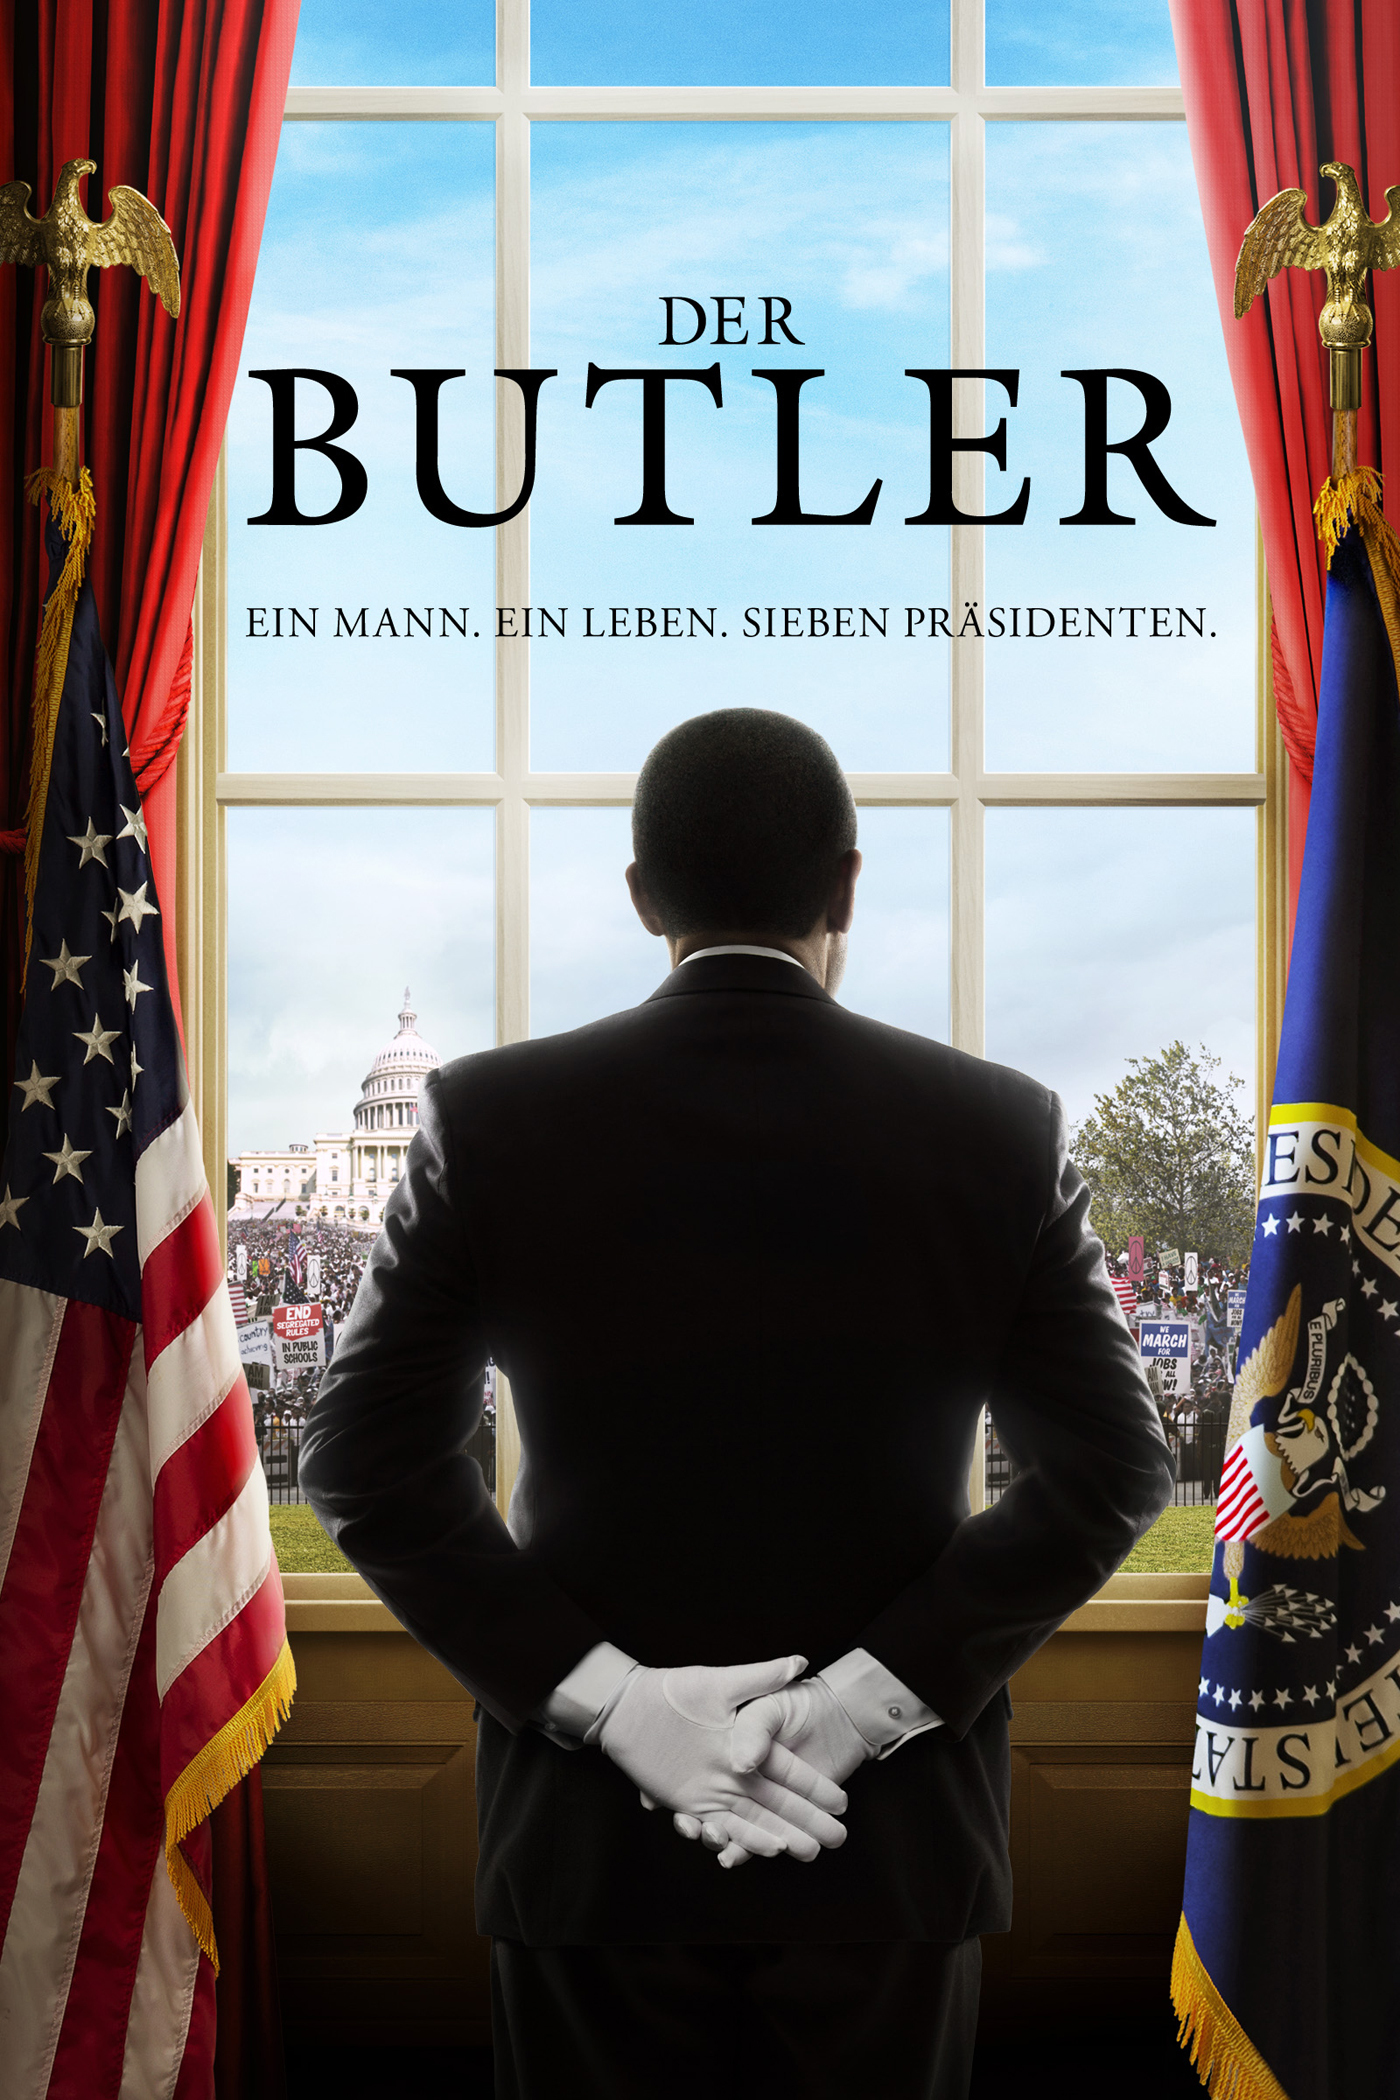 Plakat von "Der Butler"